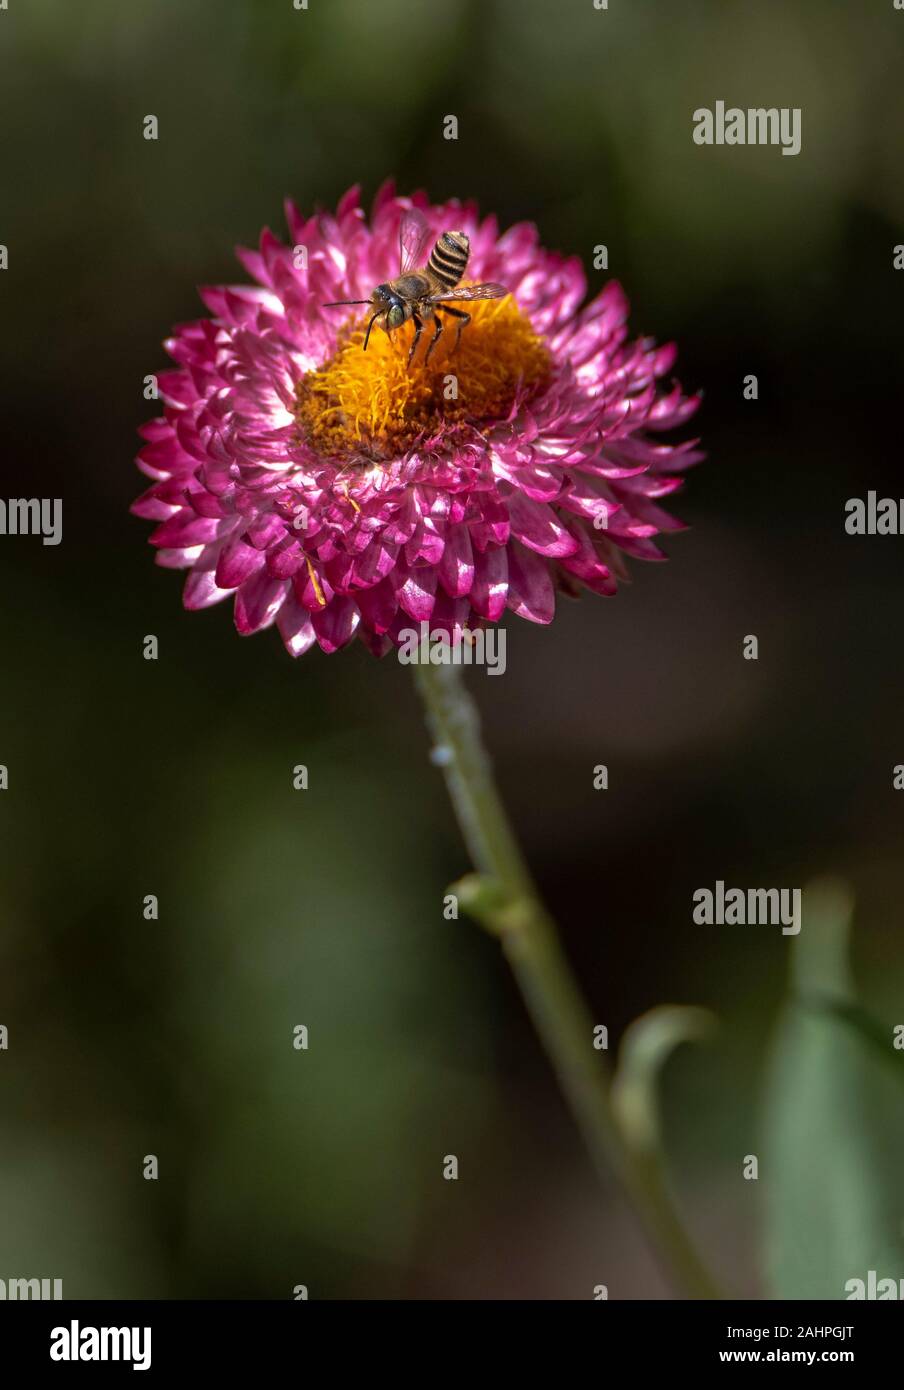 Australian native bee on flower Stock Photo